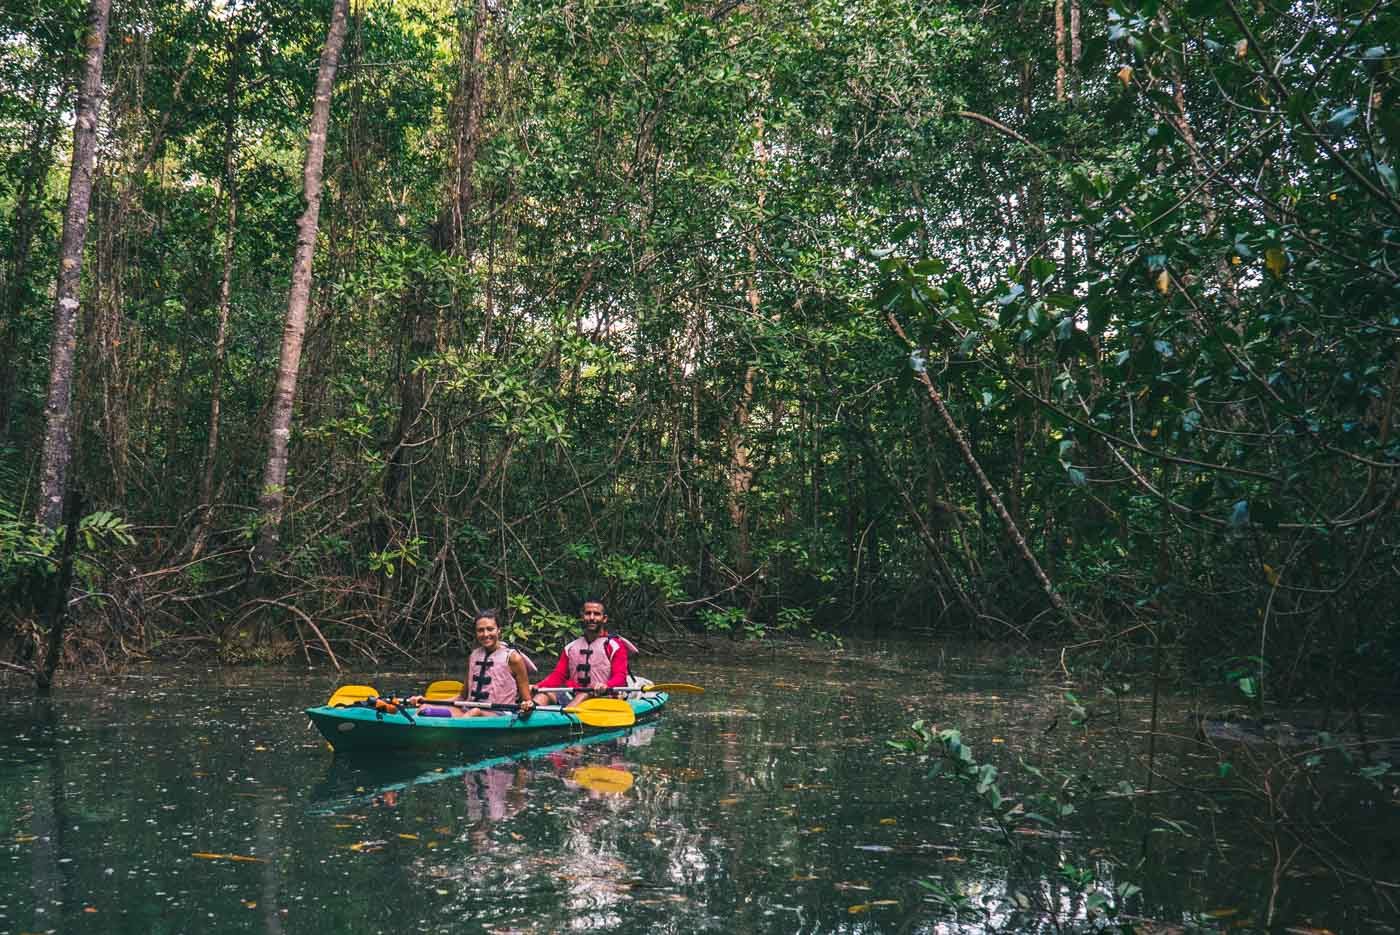 哥斯达黎加行程:在奥萨半岛的红树林划皮艇